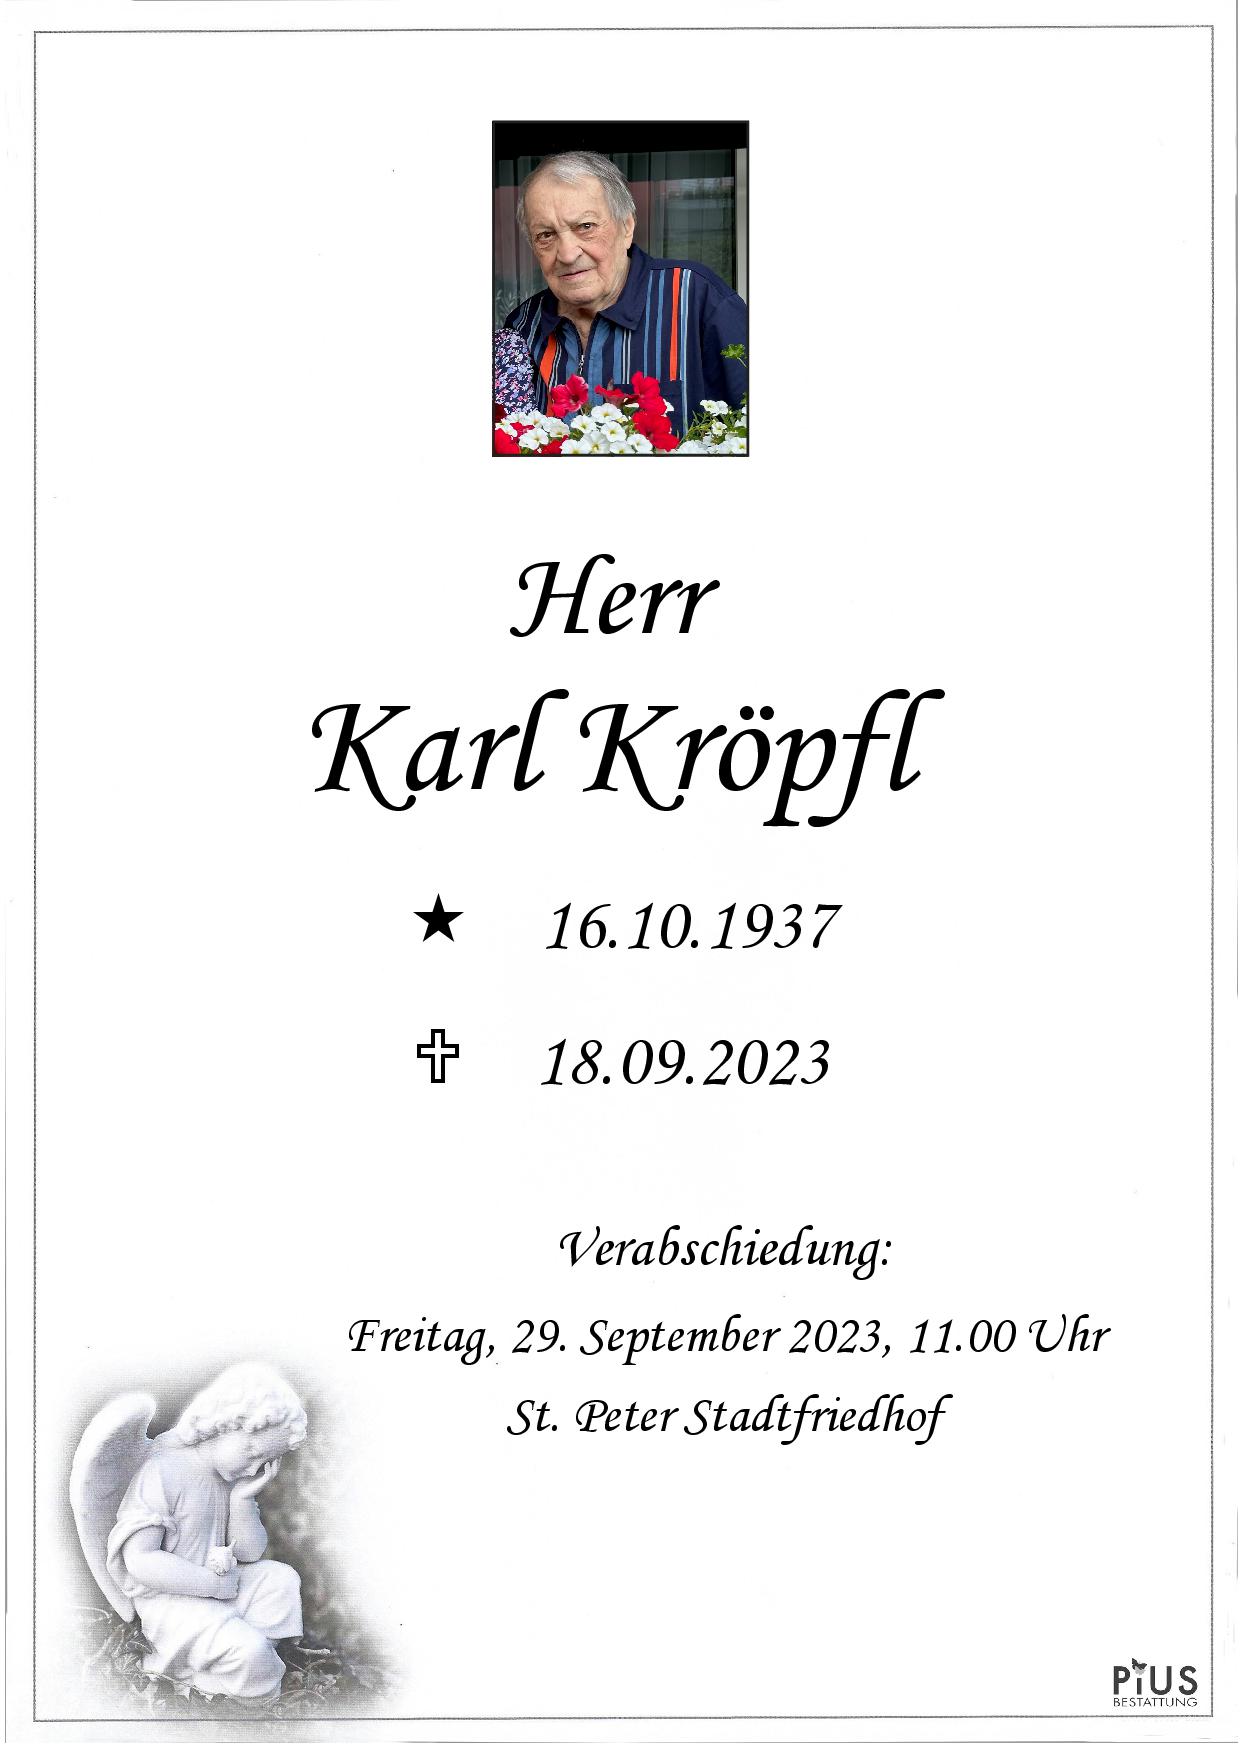 Karl Kröpfl